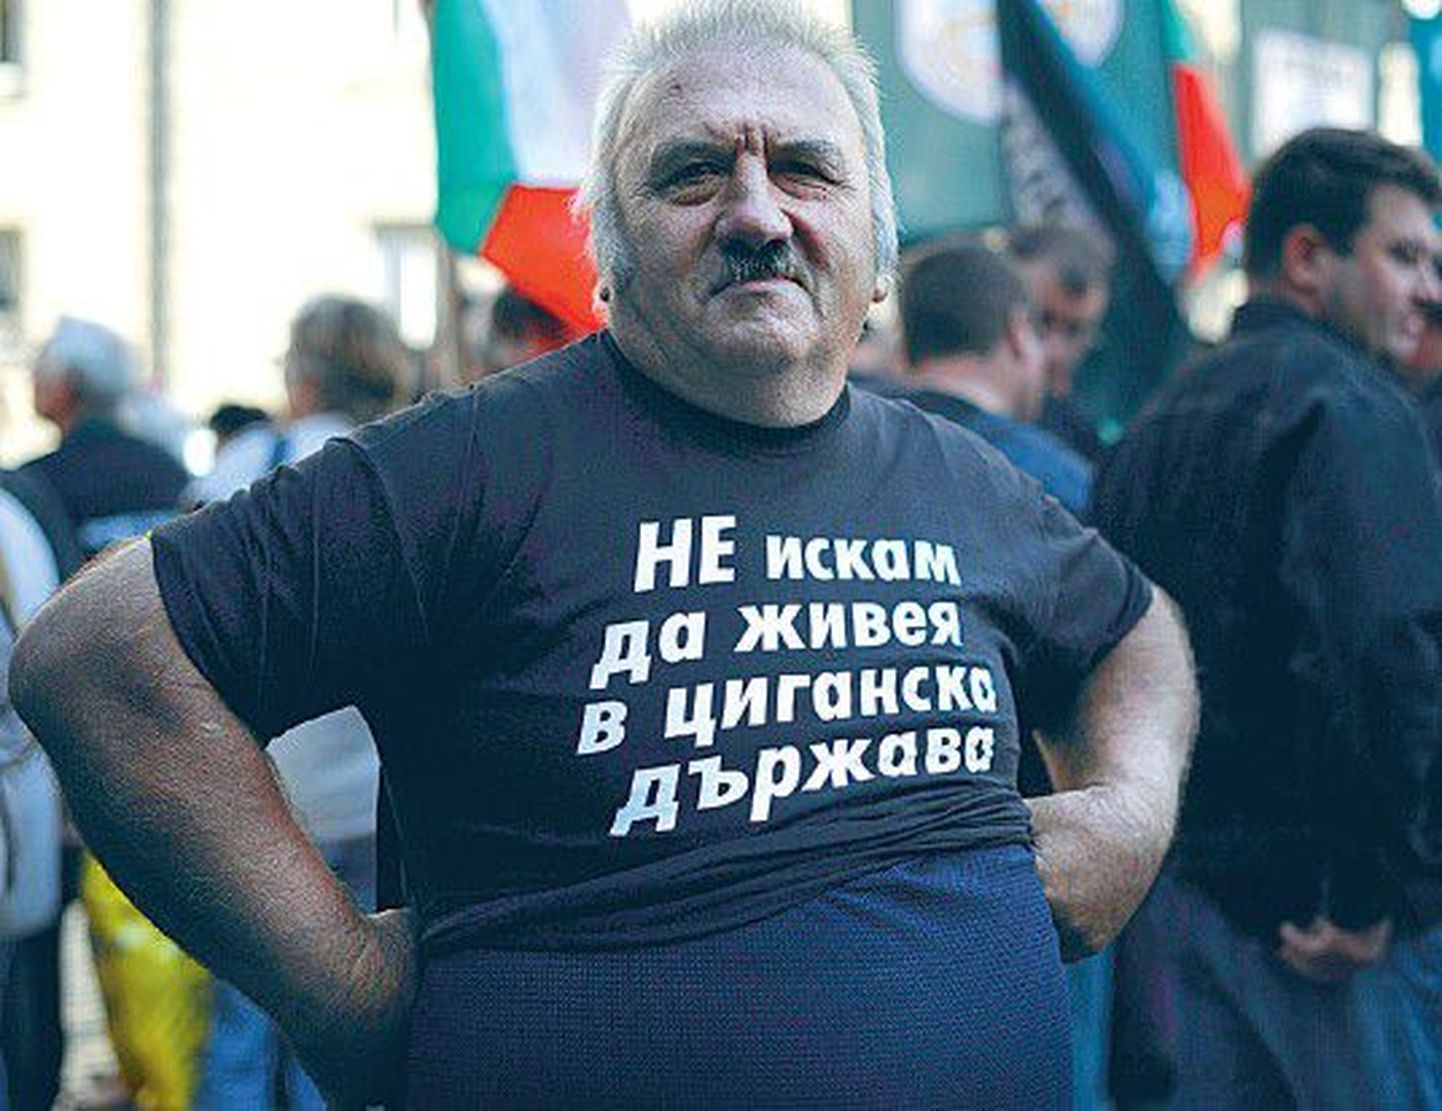 Сторонник праворадикальной партии «Атака» пришел на манифестацию в Софии в футболке с надписью: «Я не хочу жить в государстве цыган».